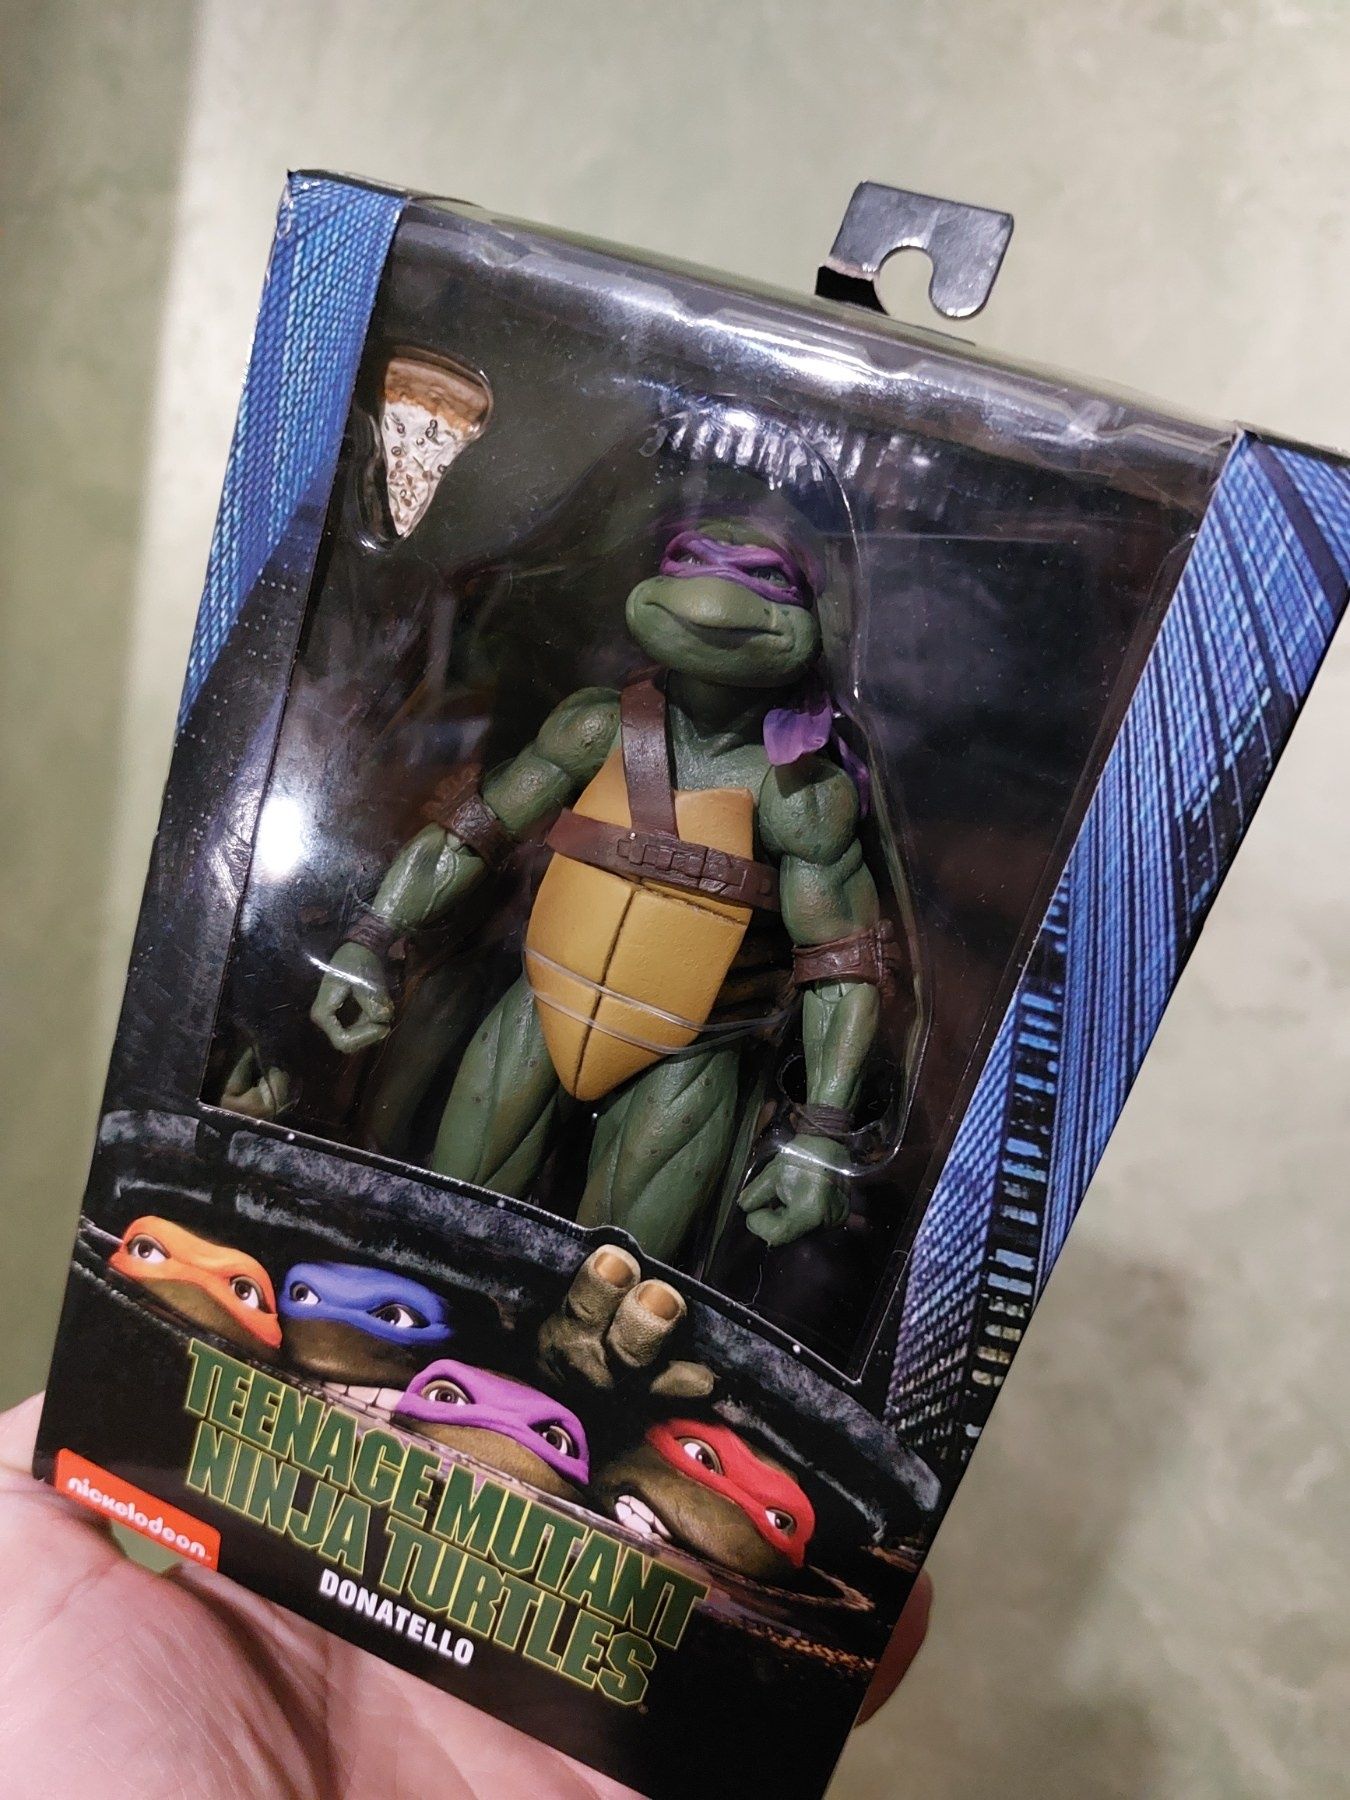 Фигурка Donatello, Teenage mutant ninja turtles, производство NECA